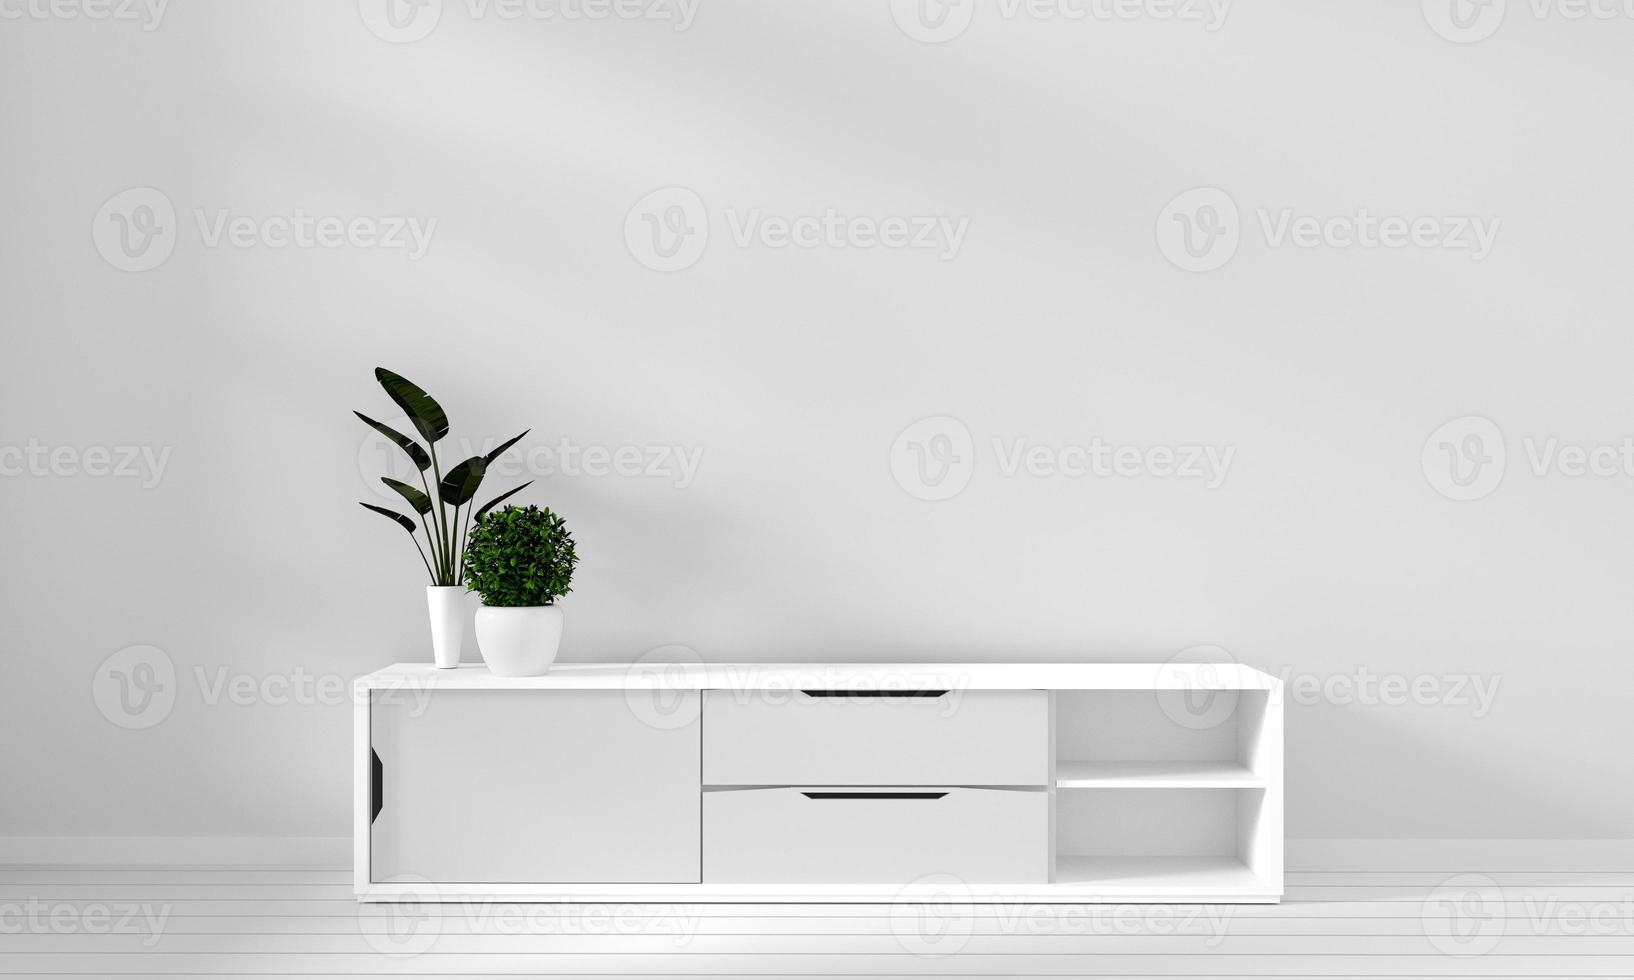 gabinete en la sala de estar moderna con lámpara, gabinete, marco y planta sobre fondo de pared blanca, representación 3d foto